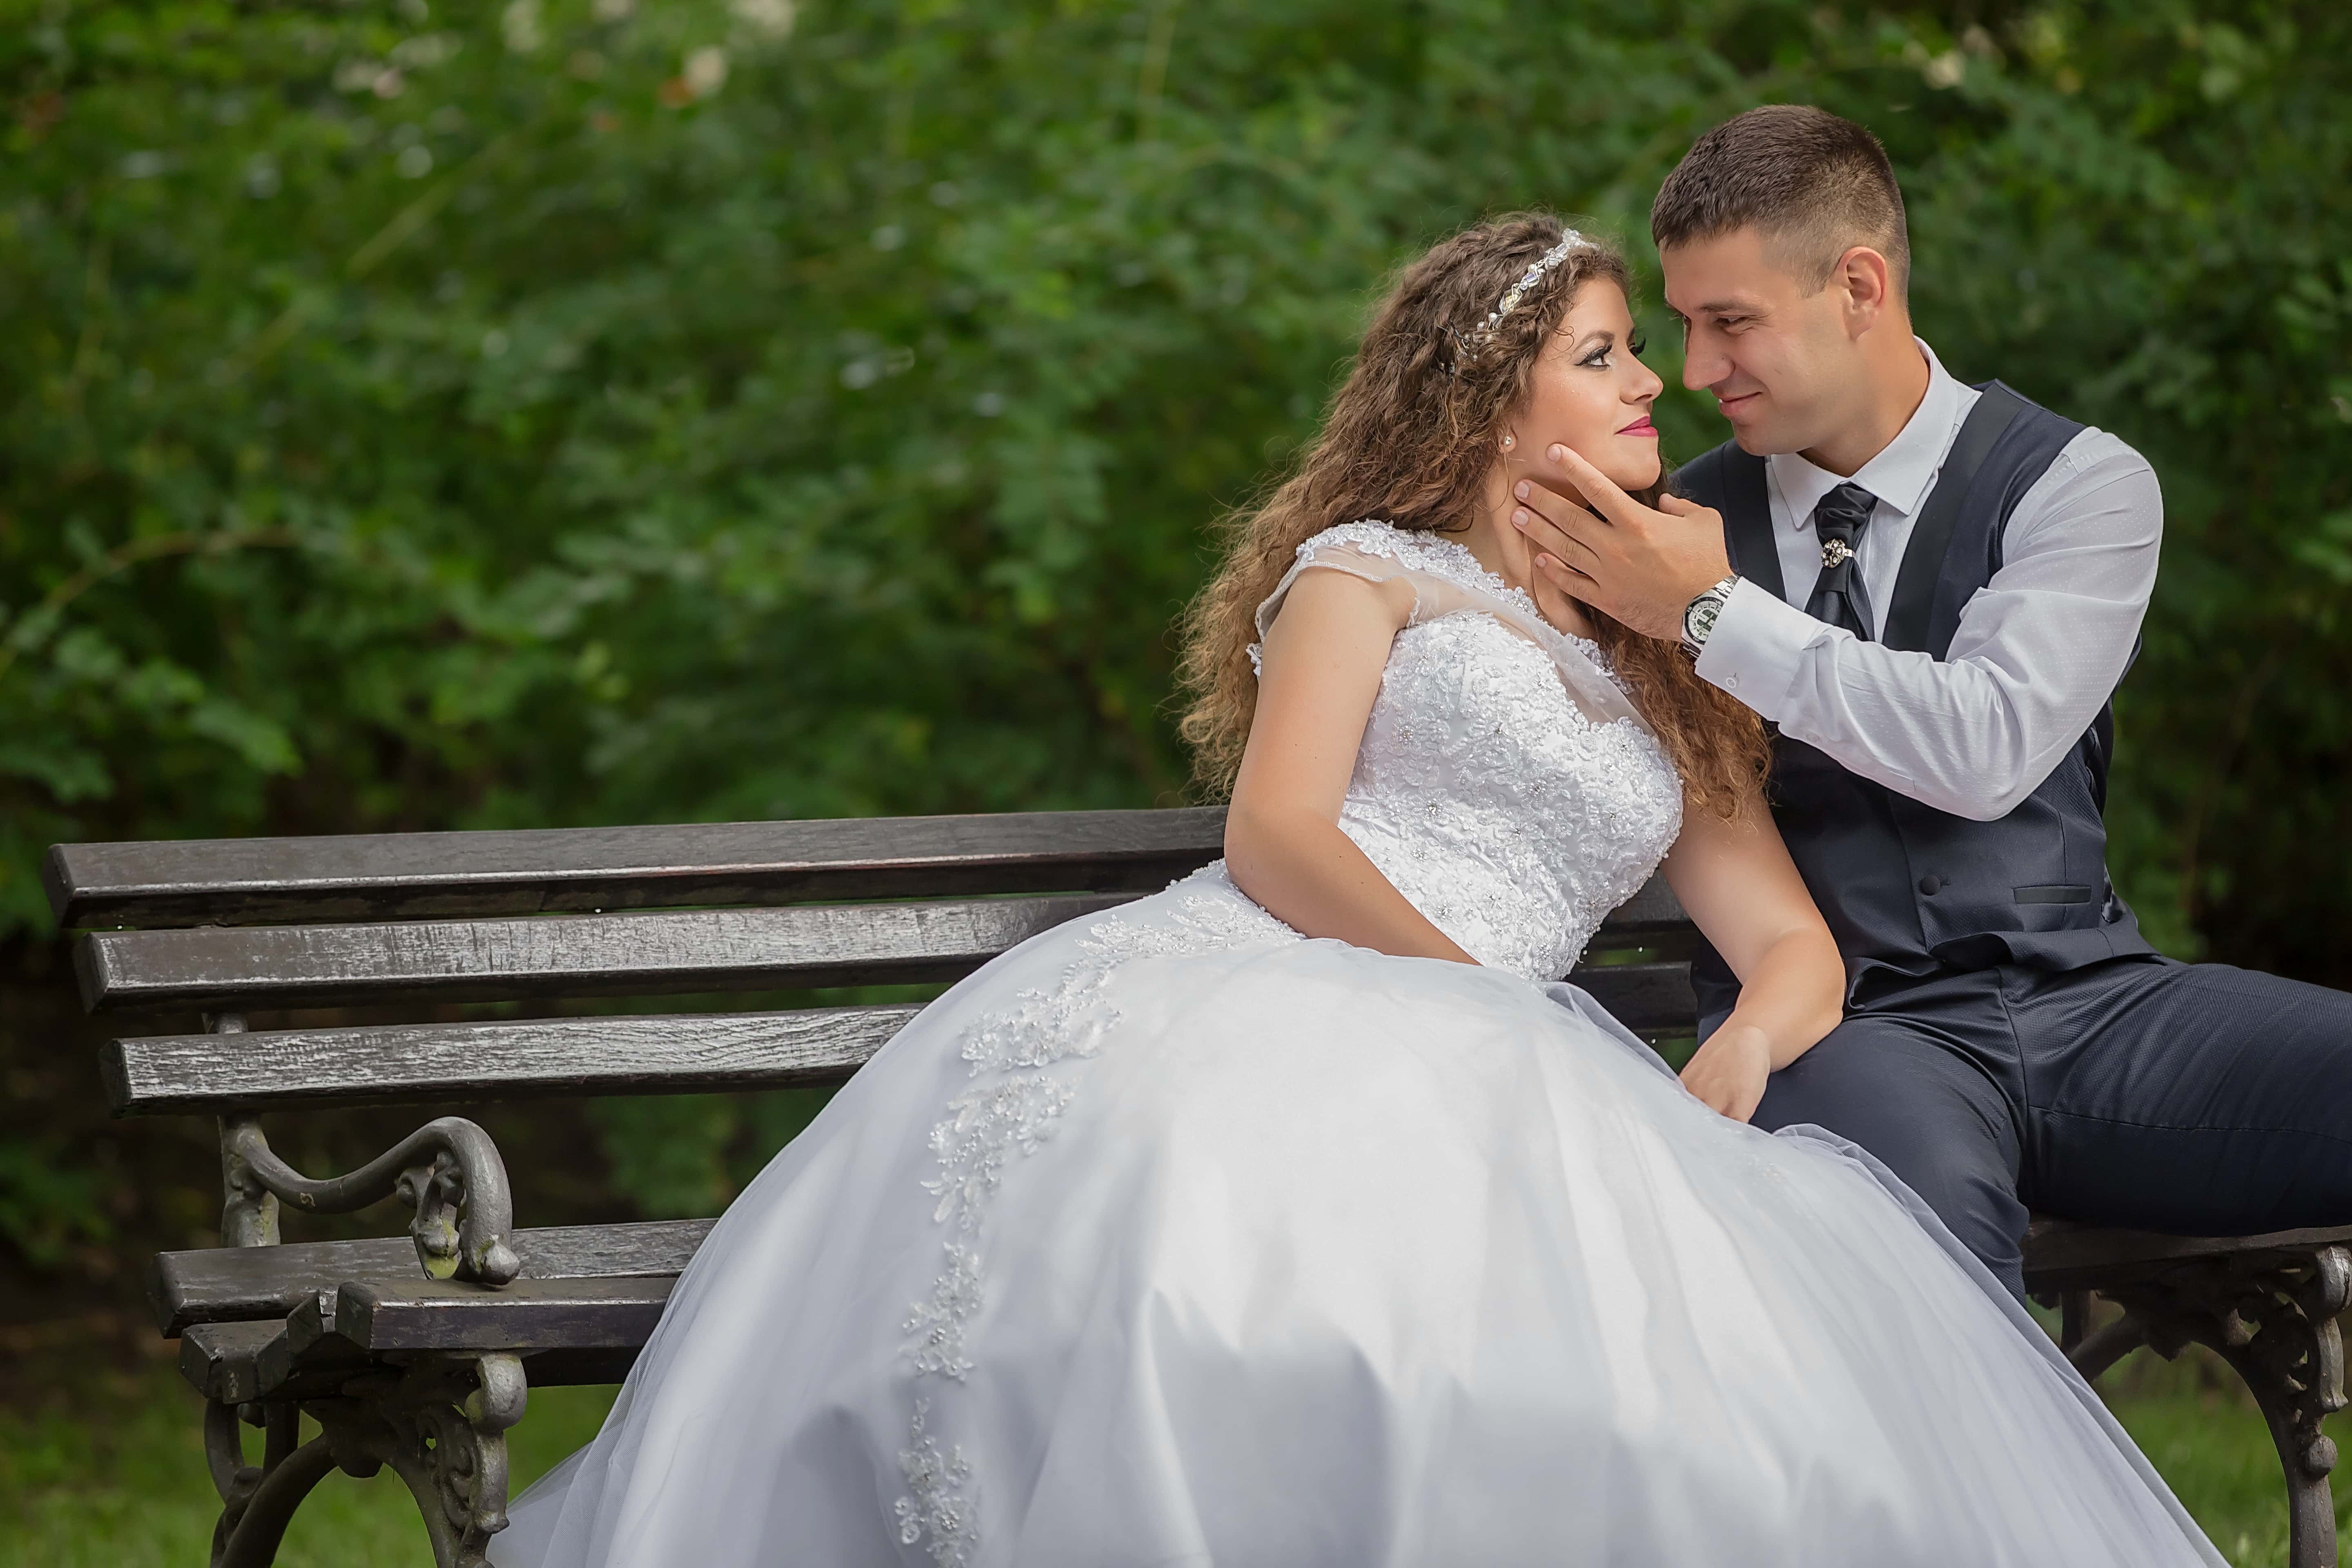 Поцелуй невесту читать. Фотосессия пар на свадьбе сидя. Жених с невестой в Томске.